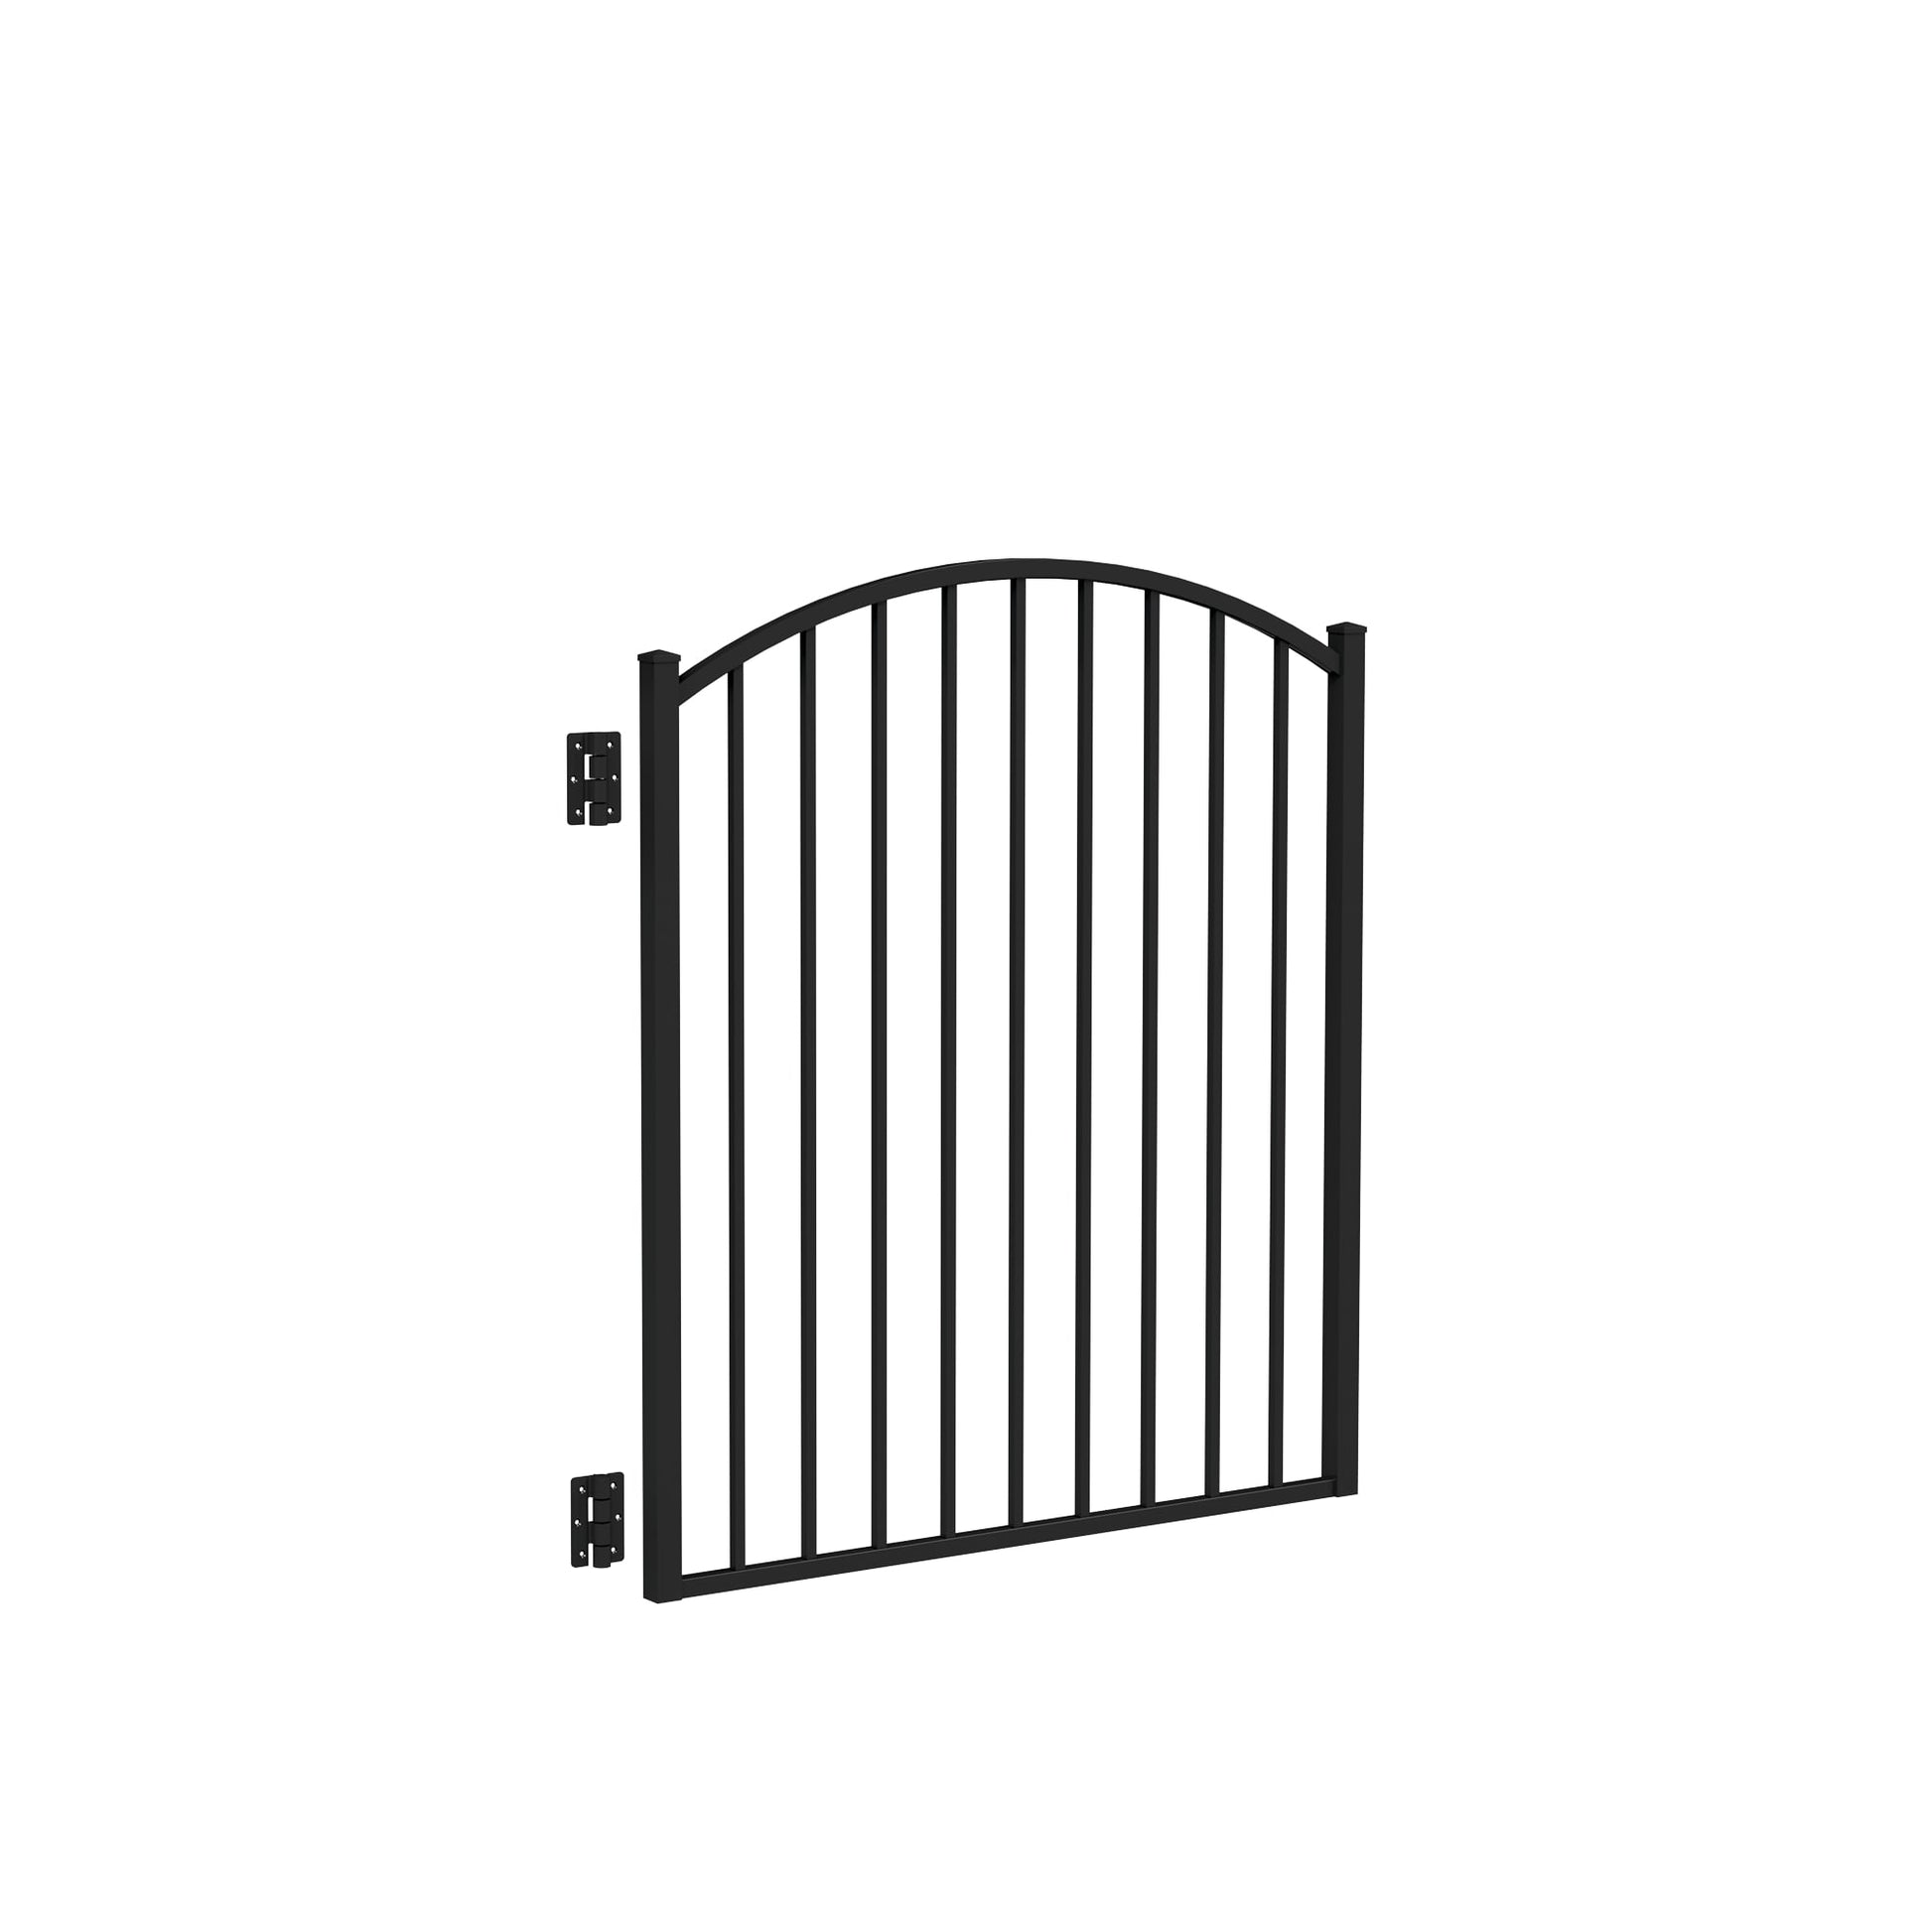 Bedrock Harbor Series - Arched Gate - 4' x 4'-Aluminum Fence Gates-ActiveYards-Black-FenceCenter